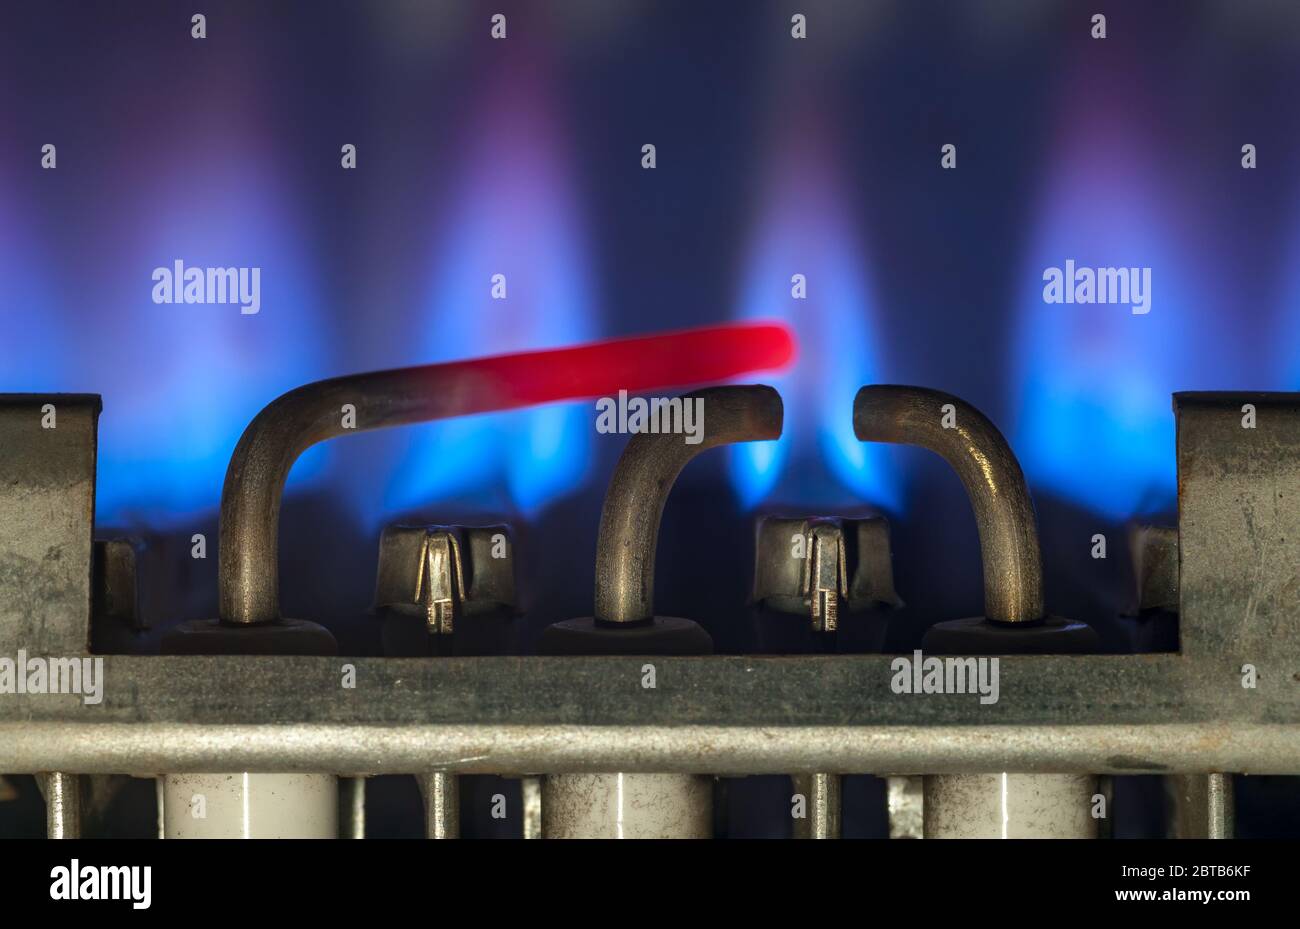 Brûlures de gaz dans le chauffe-eau moderne. Gros plan. Mise au point sélective Banque D'Images